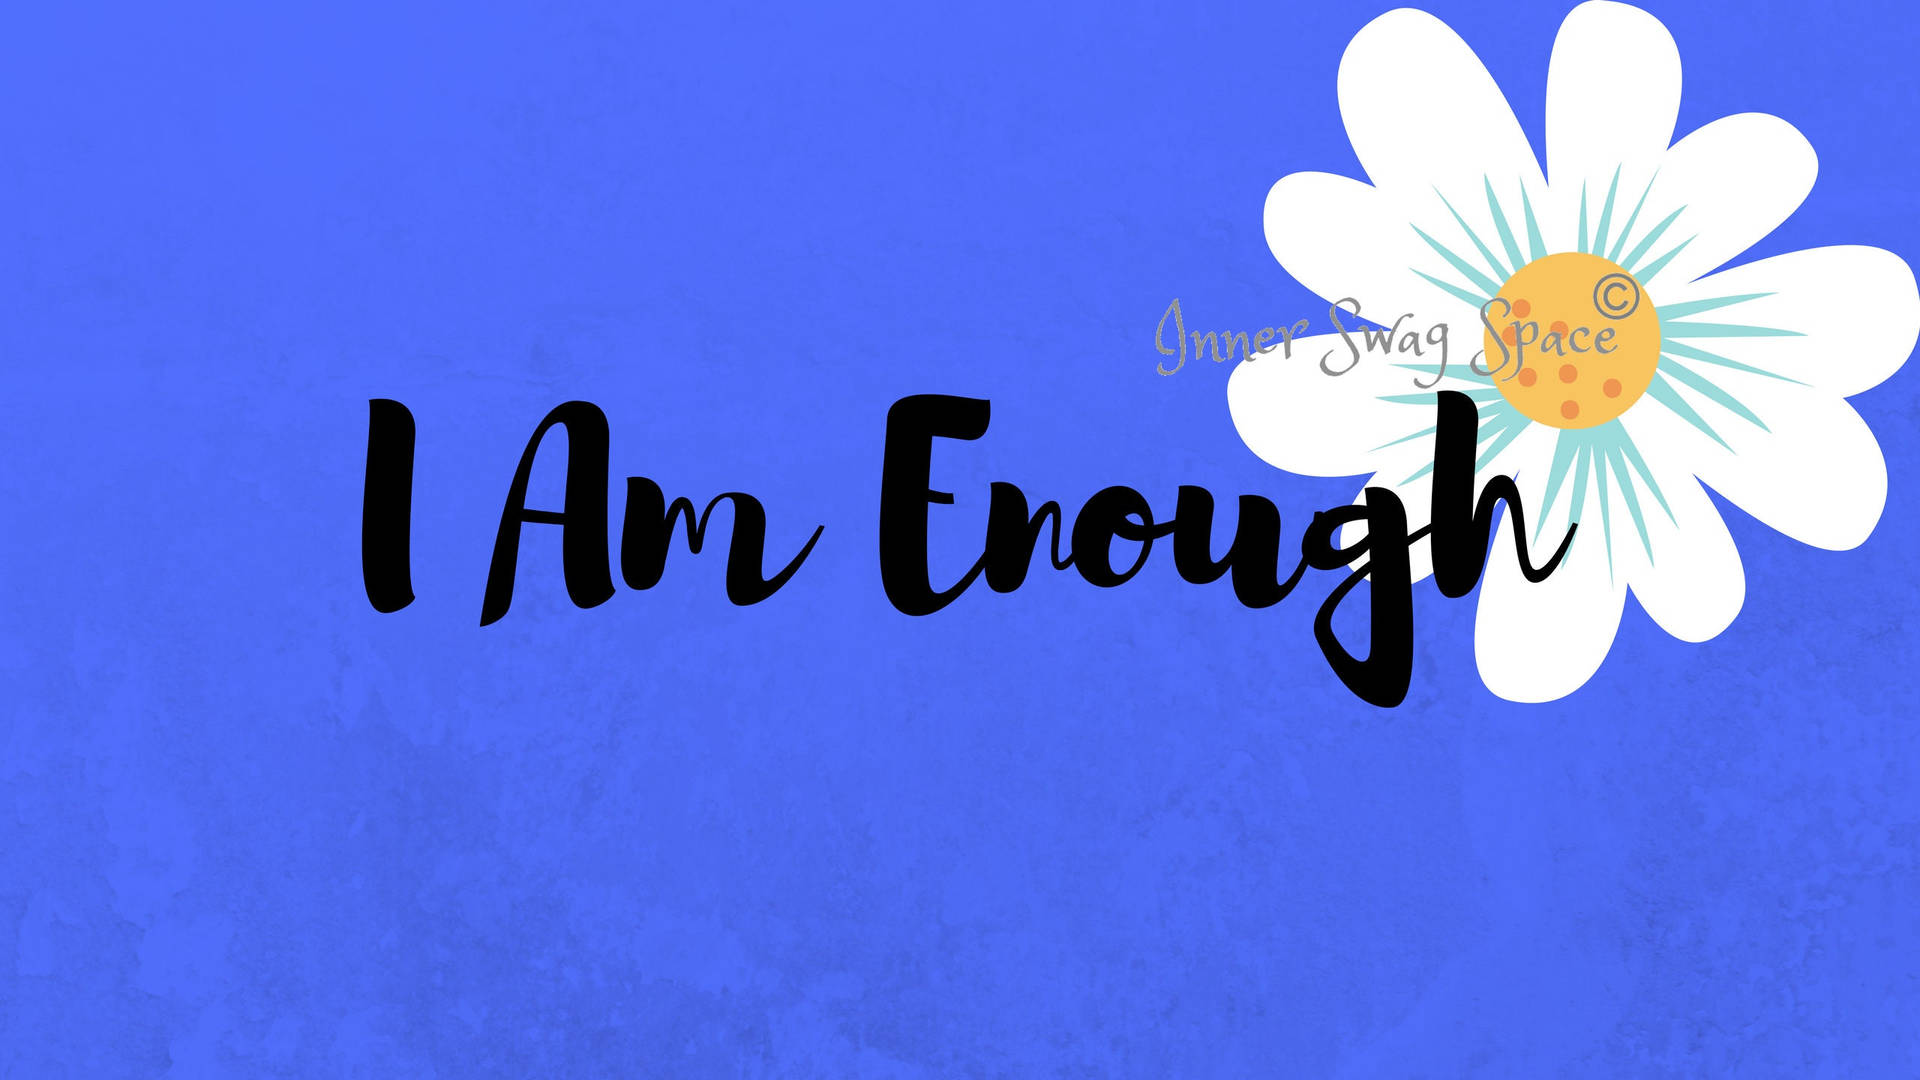 I Am Enough - I Am Enough - I Am Enough - I Am Enough - I Am Enough - I Wallpaper